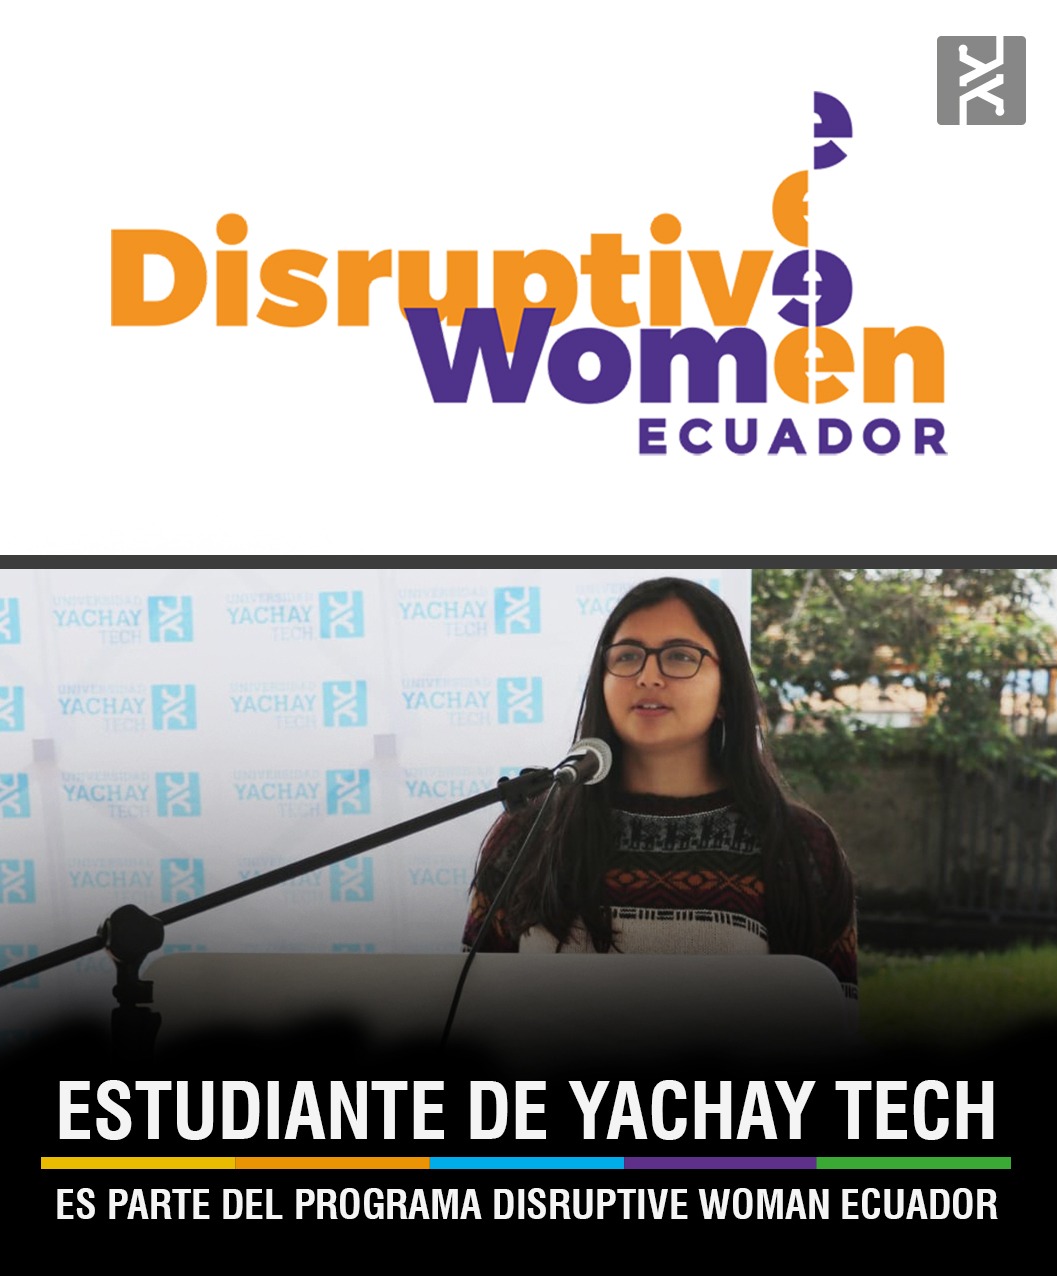 ESTUDIANTE DE YACHAY TECH ES PARTE DEL PROGRAMA “DISRUPTIVE WOMAN ECUADOR”